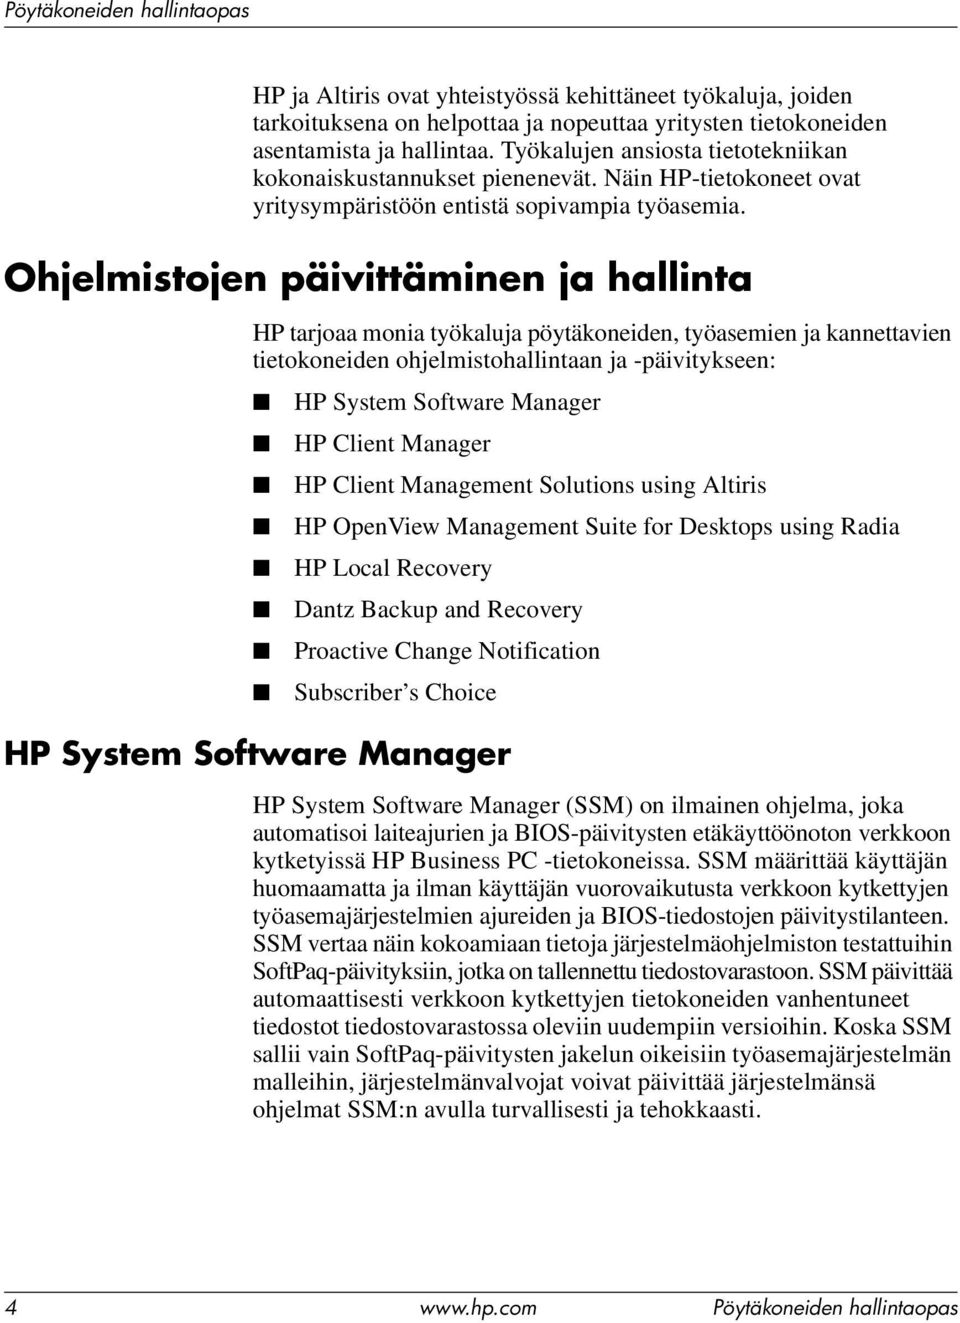 Ohjelmistojen päivittäminen ja hallinta HP tarjoaa monia työkaluja pöytäkoneiden, työasemien ja kannettavien tietokoneiden ohjelmistohallintaan ja -päivitykseen: HP System Software Manager HP Client